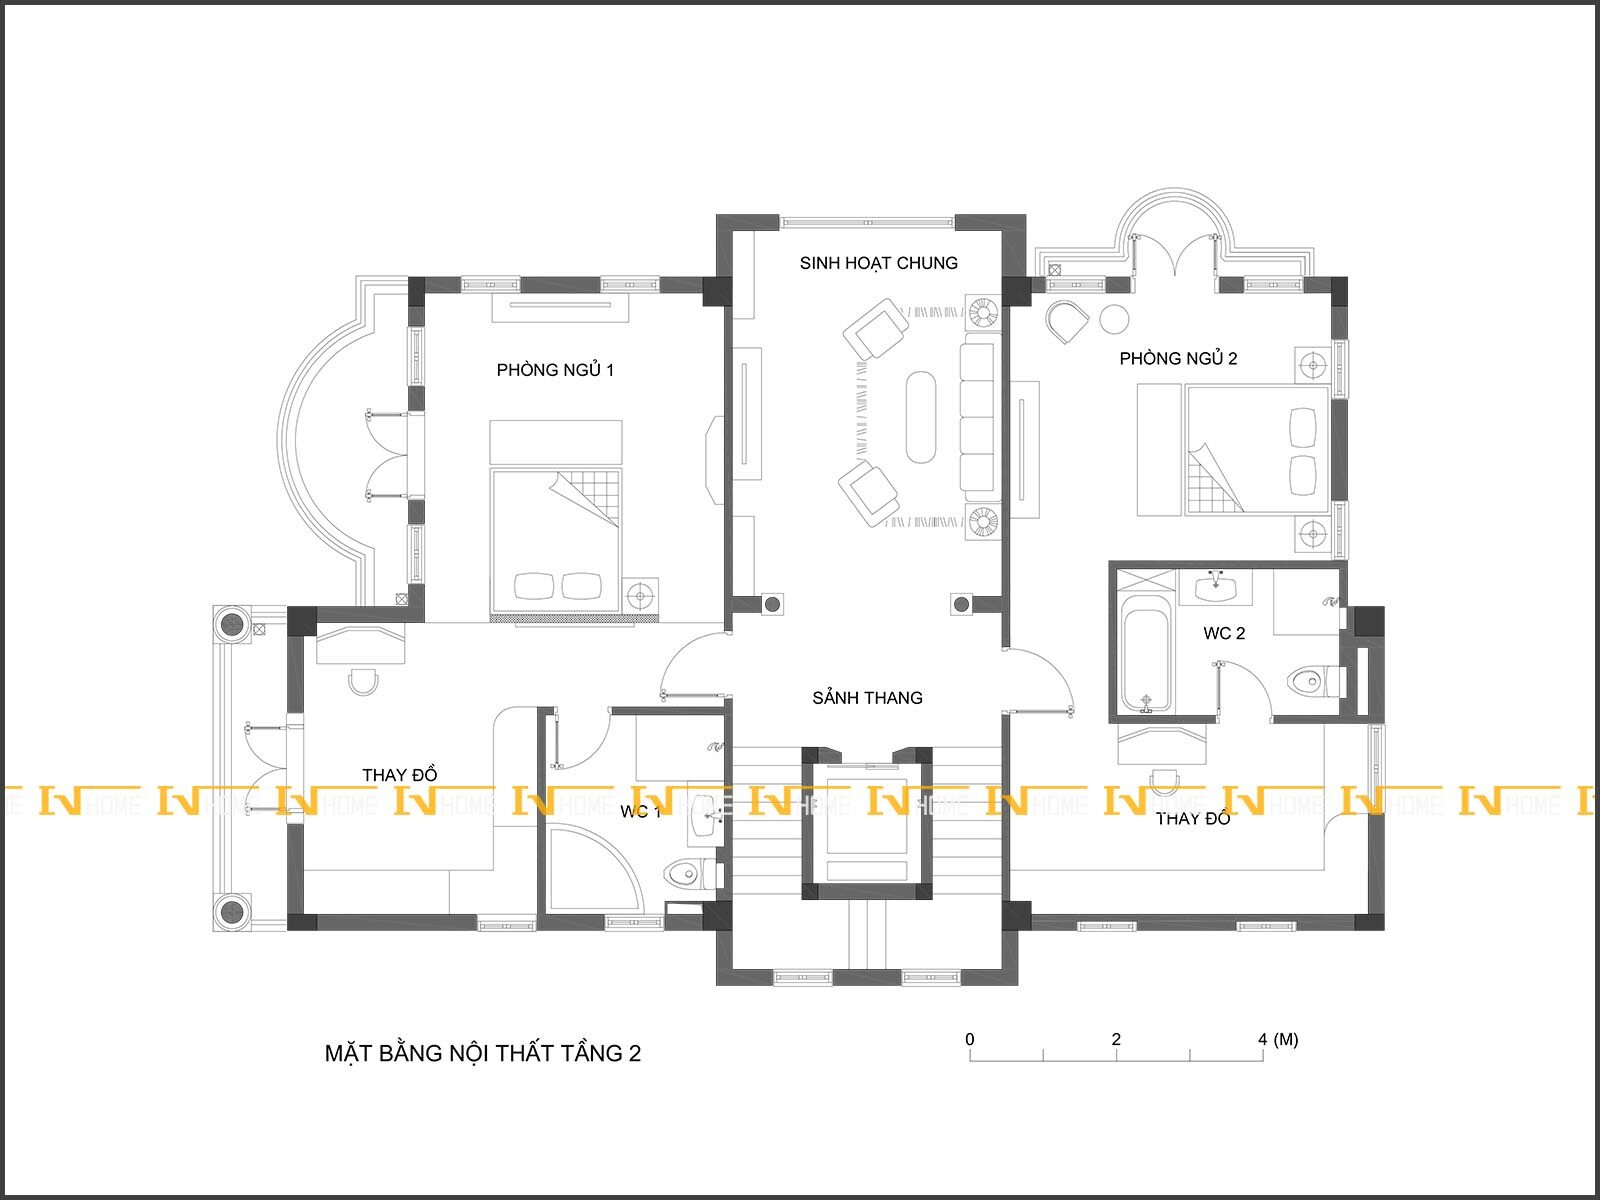 190401-1, mặt bằng phòng ngủ 1,2, sinh hoạt chung tầng 2.